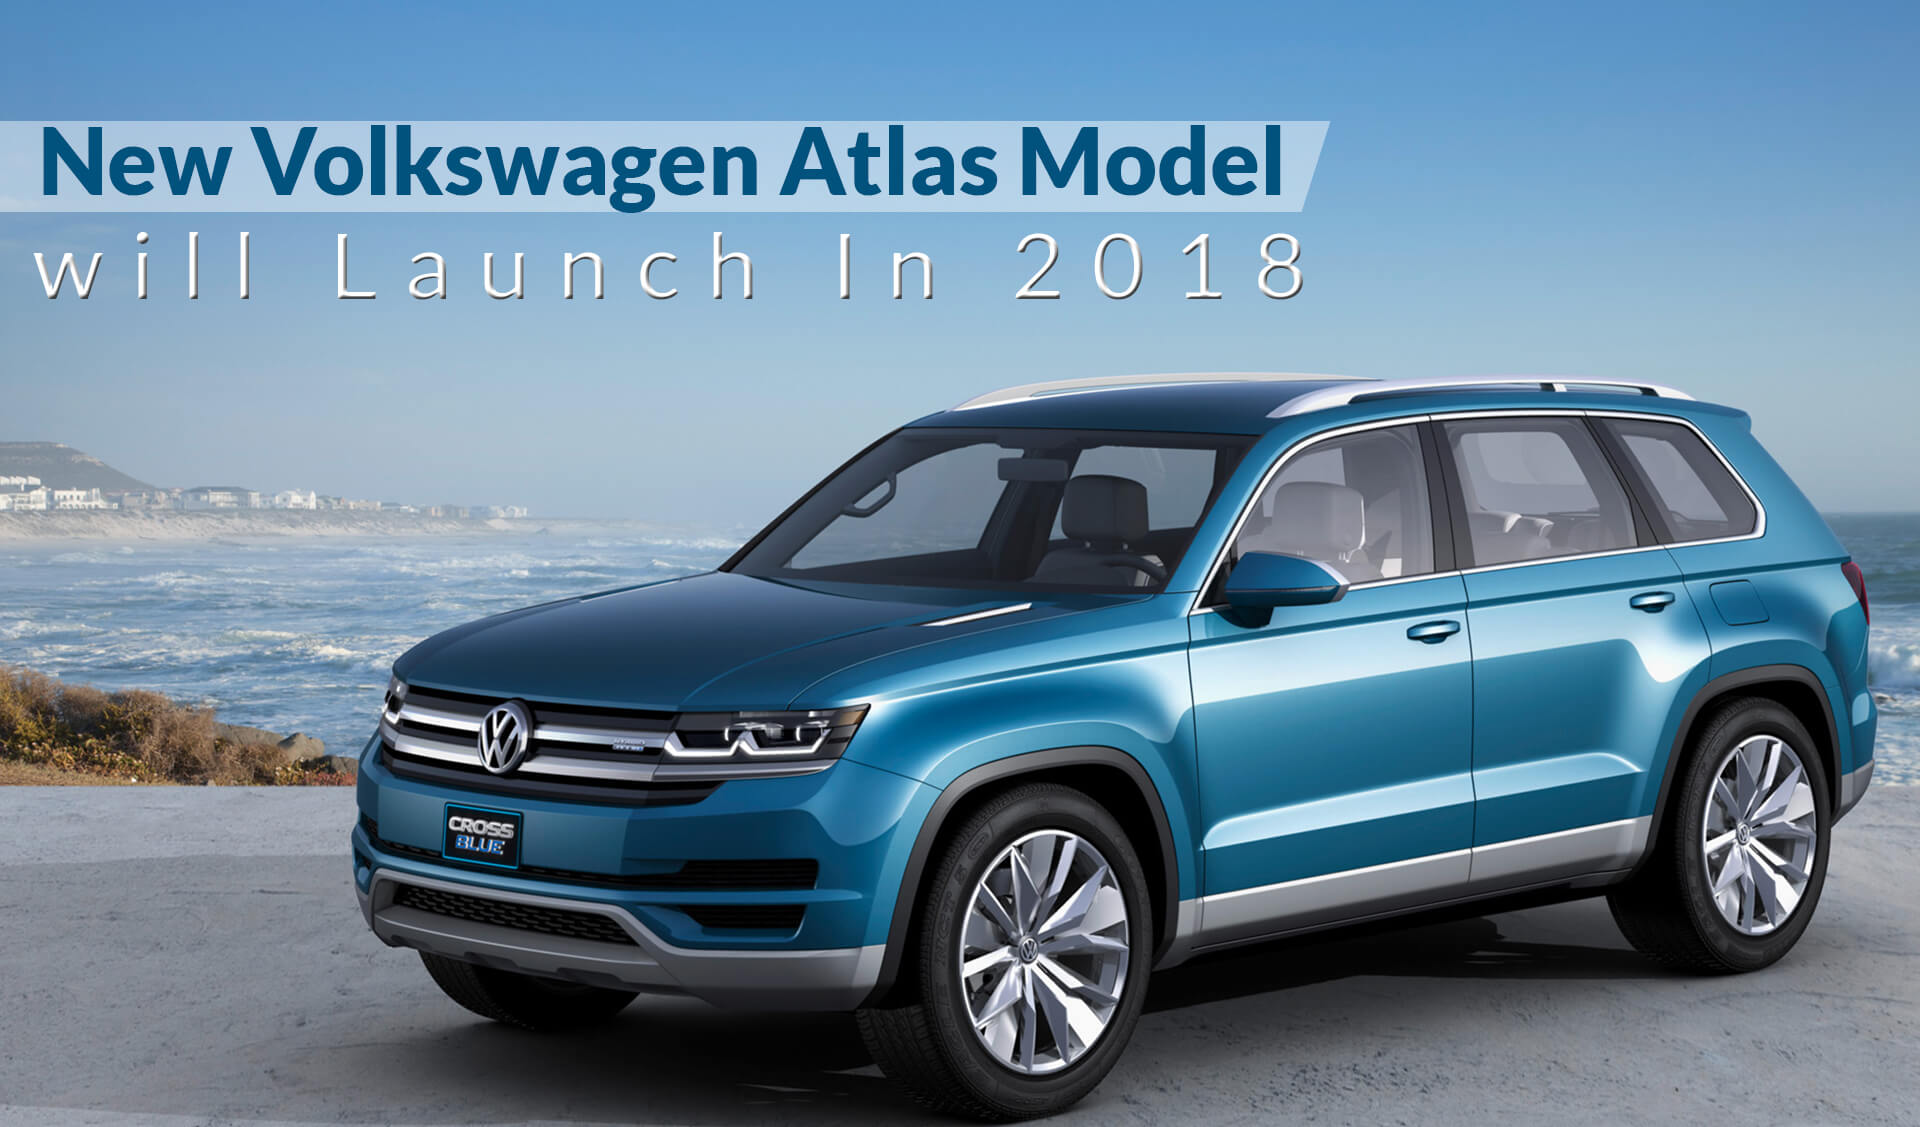 New Volkswagen Atlas Model will Launch In 2018